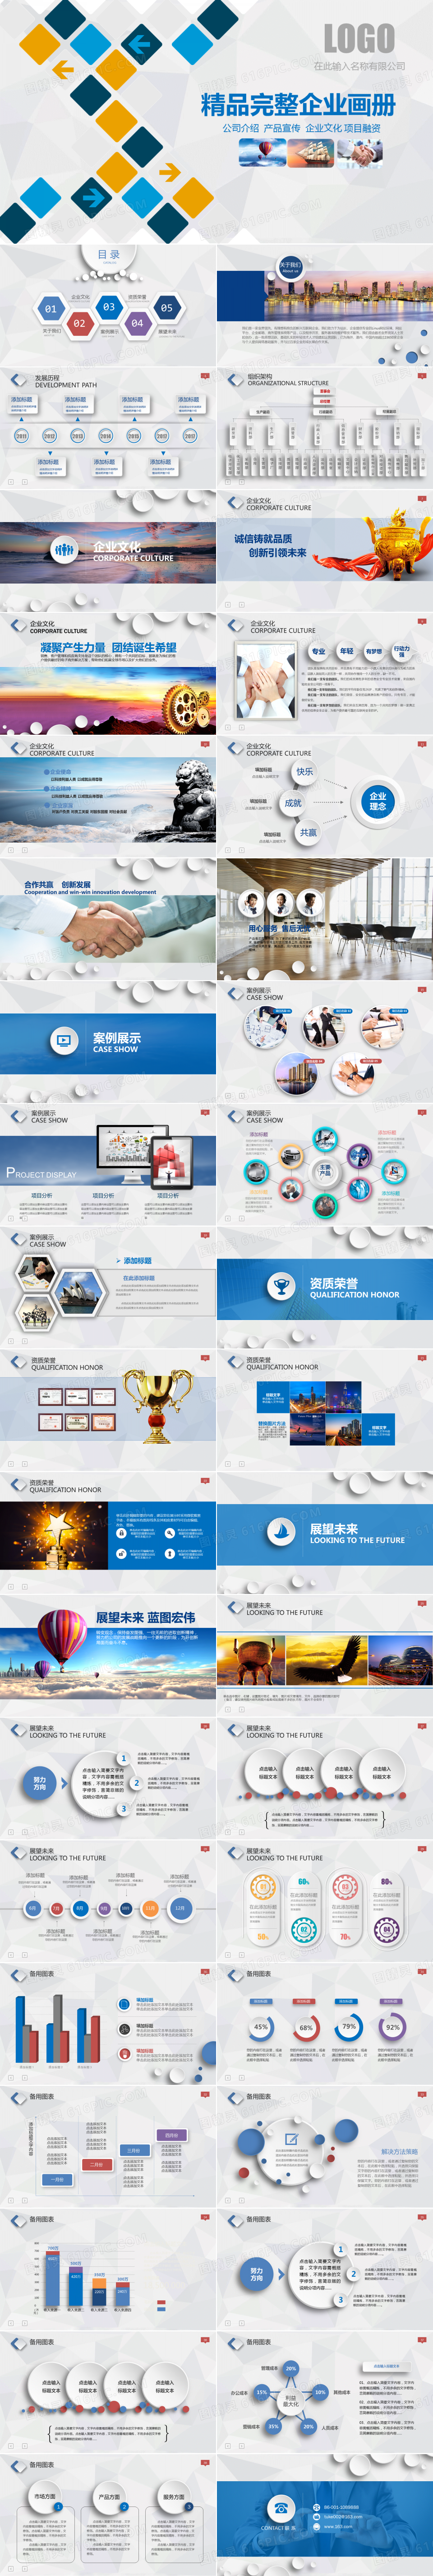 2019蓝色微粒体现代企业文化宣传公司简介企业画册PPT模板